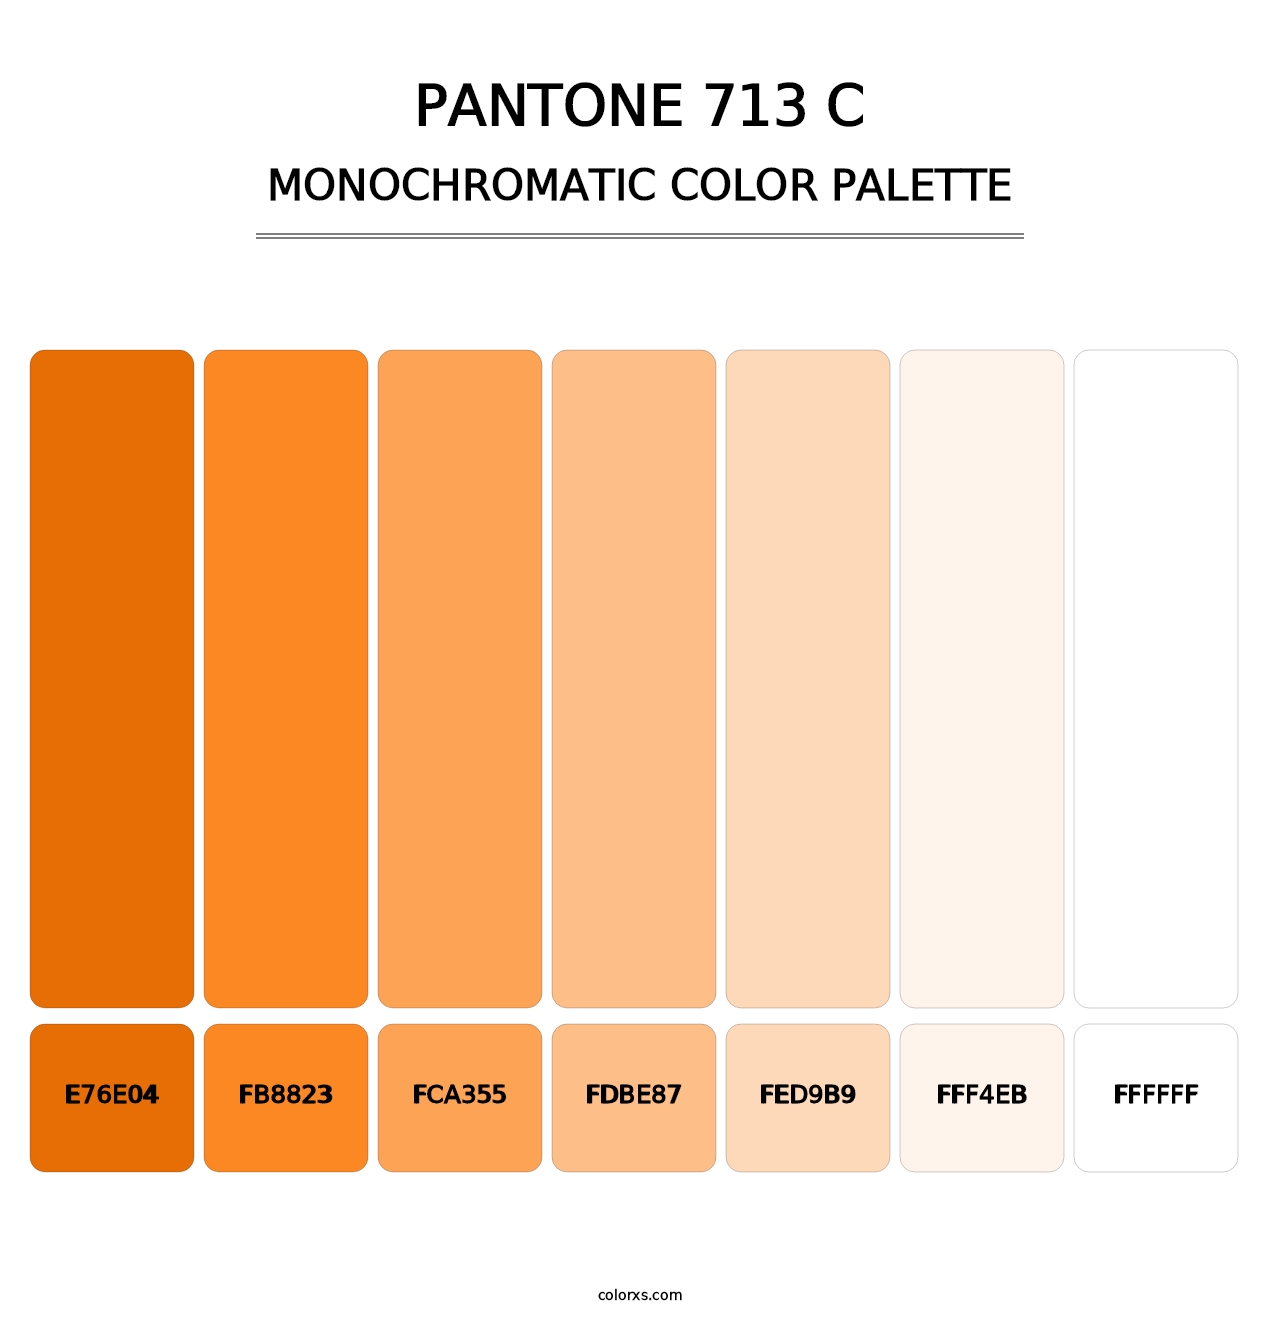 PANTONE 713 C - Monochromatic Color Palette